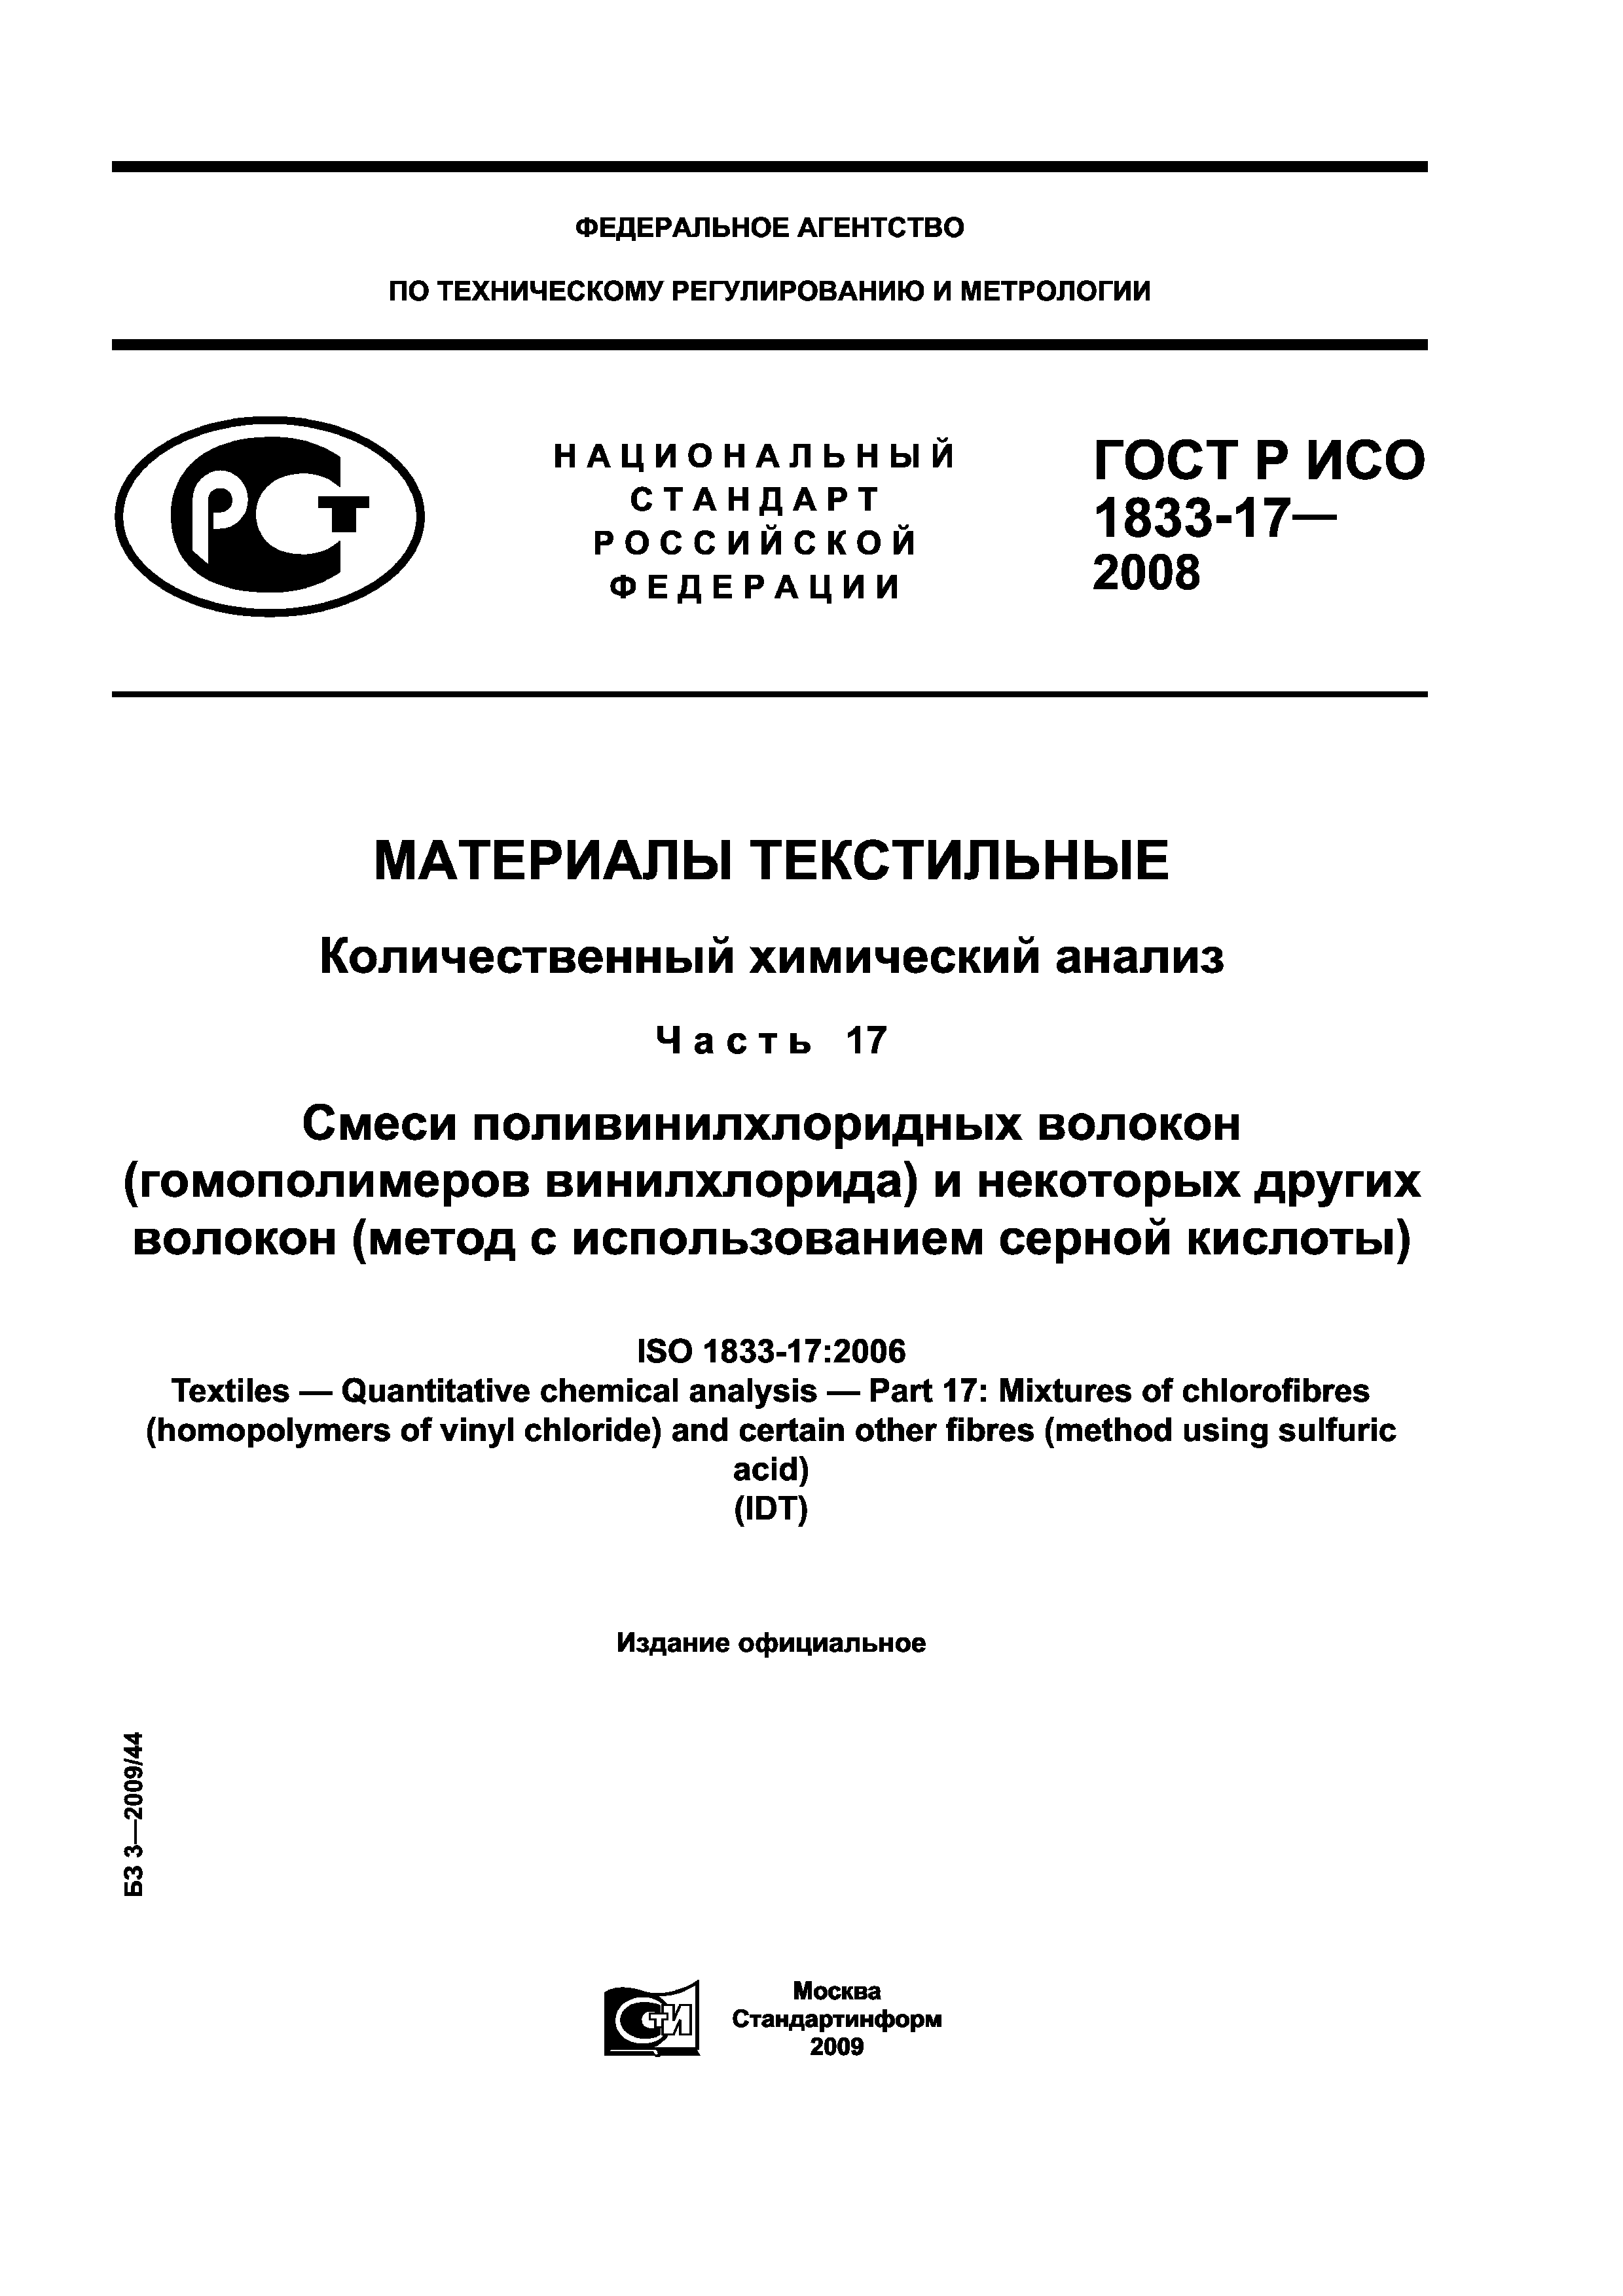 ГОСТ Р ИСО 1833-17-2008